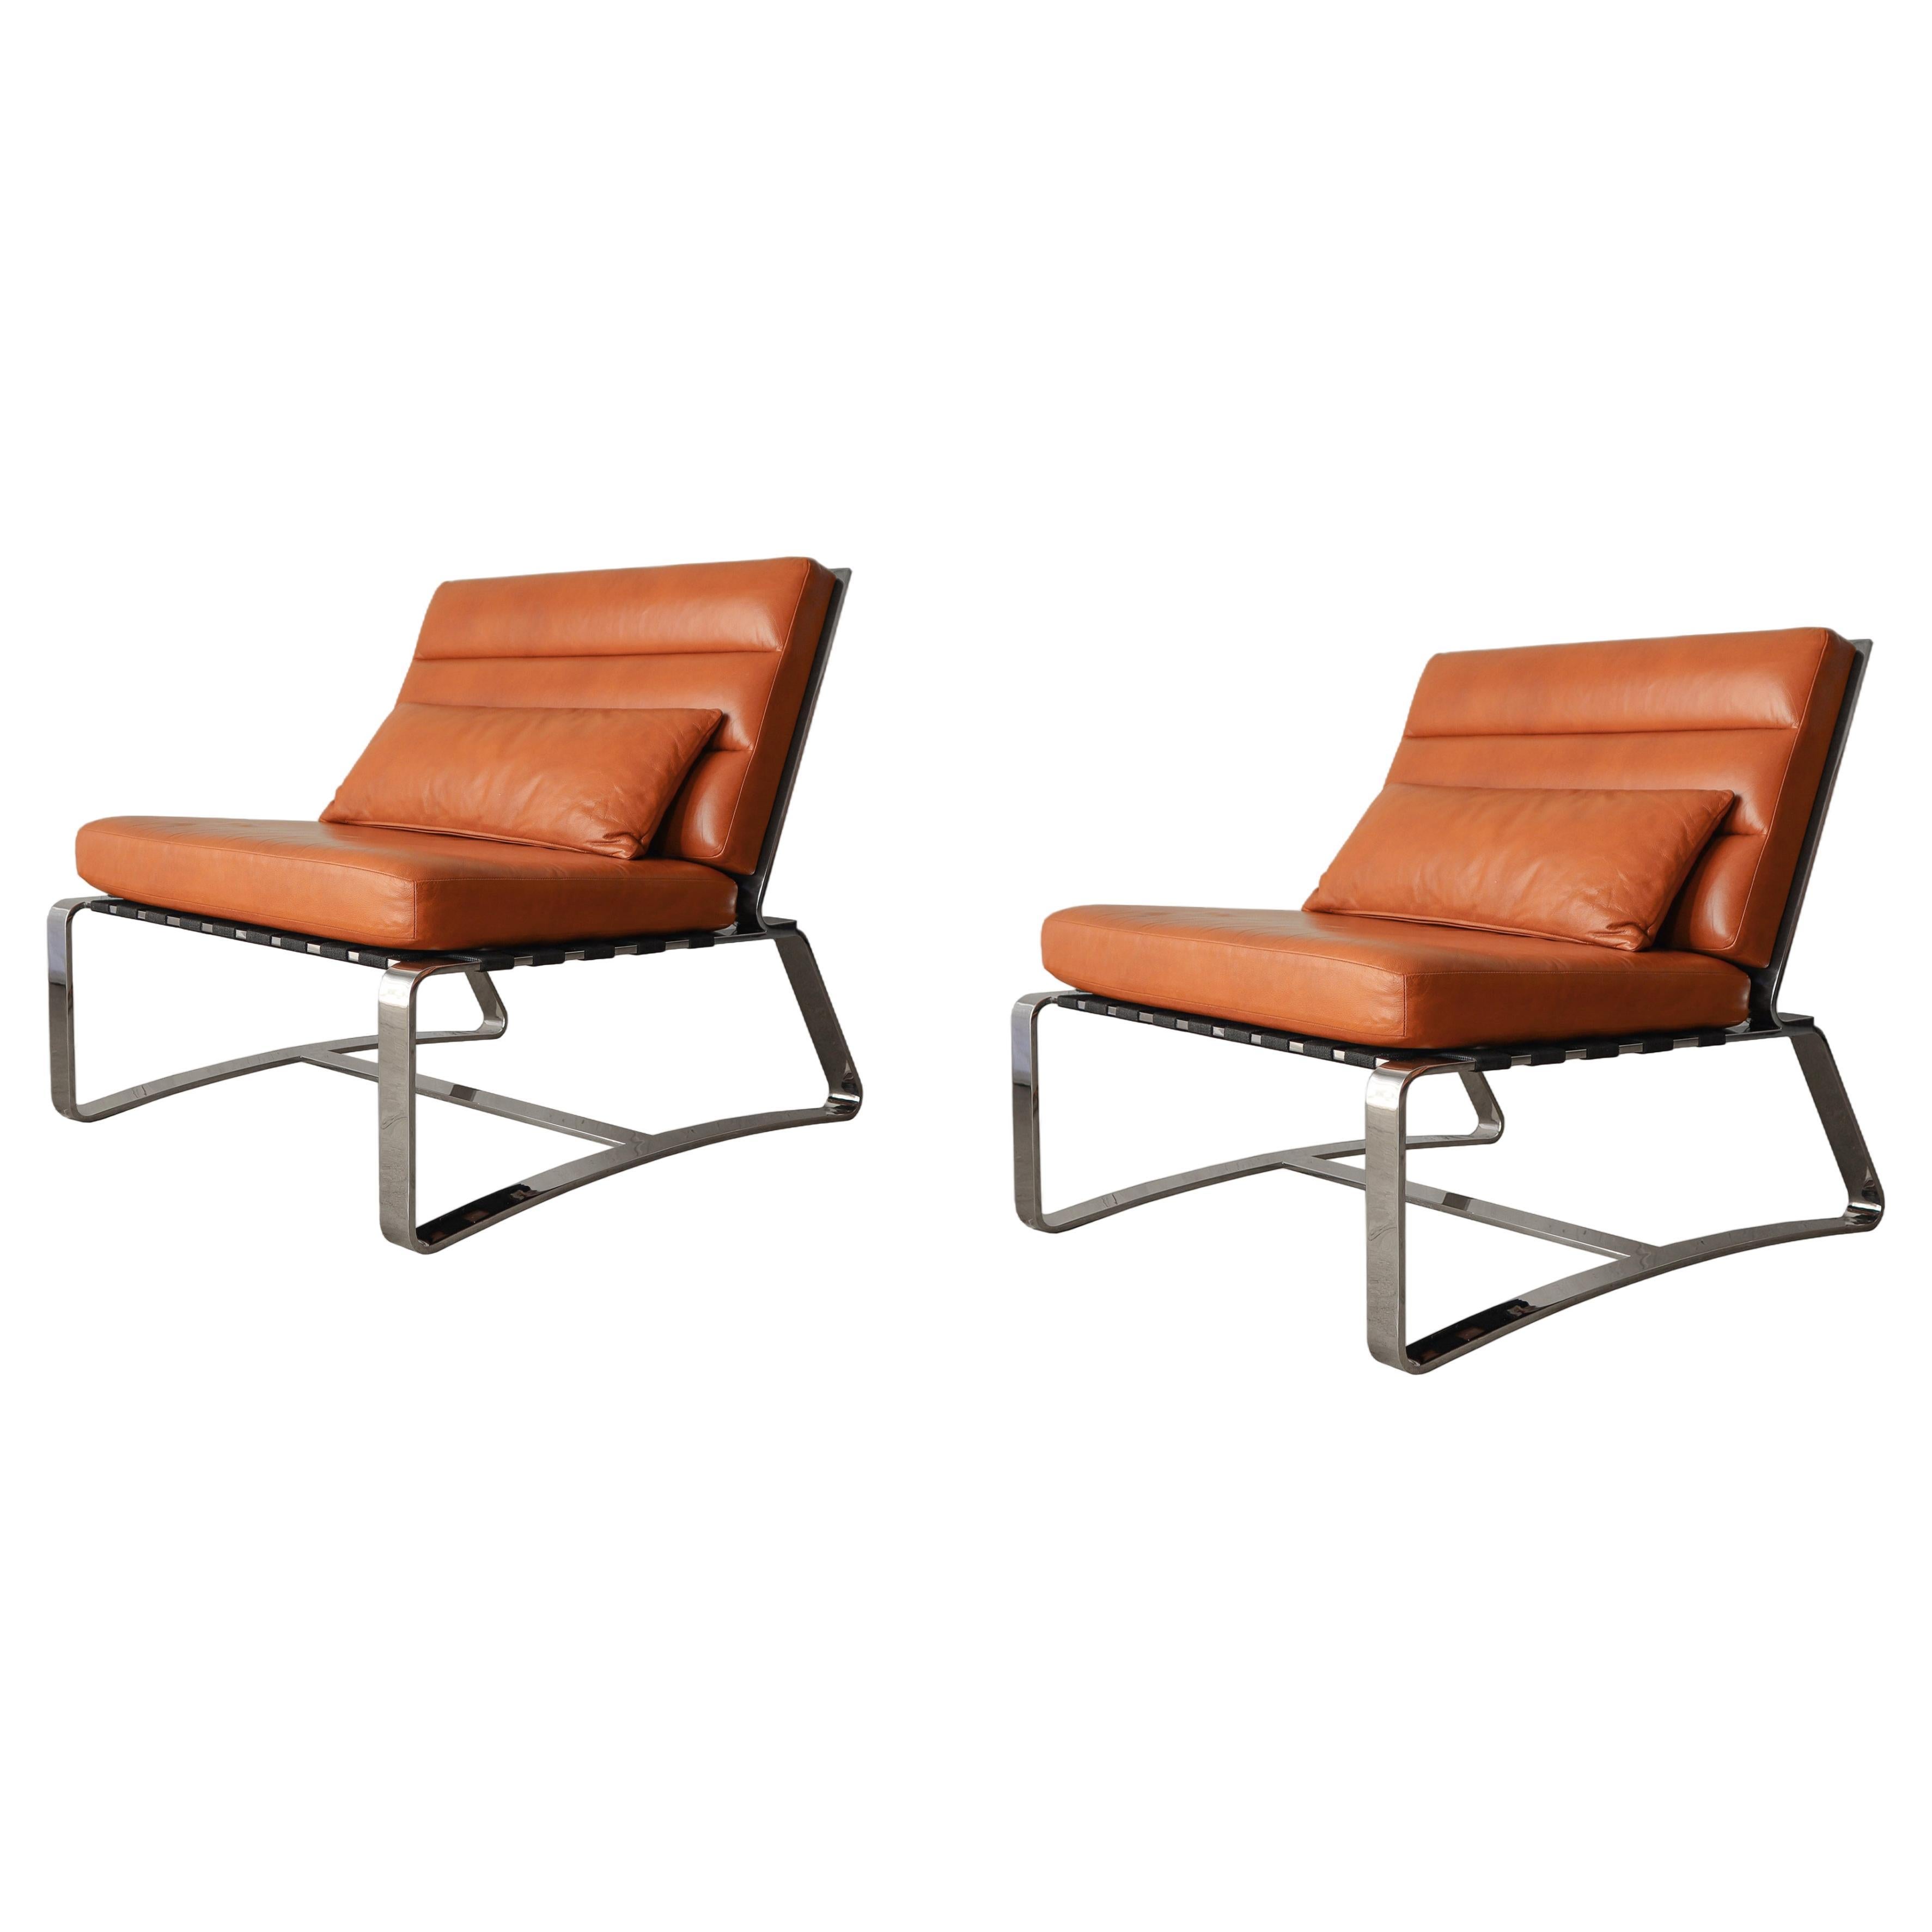 Substantielle paire de chaises longues italiennes en acier inoxydable et cuir